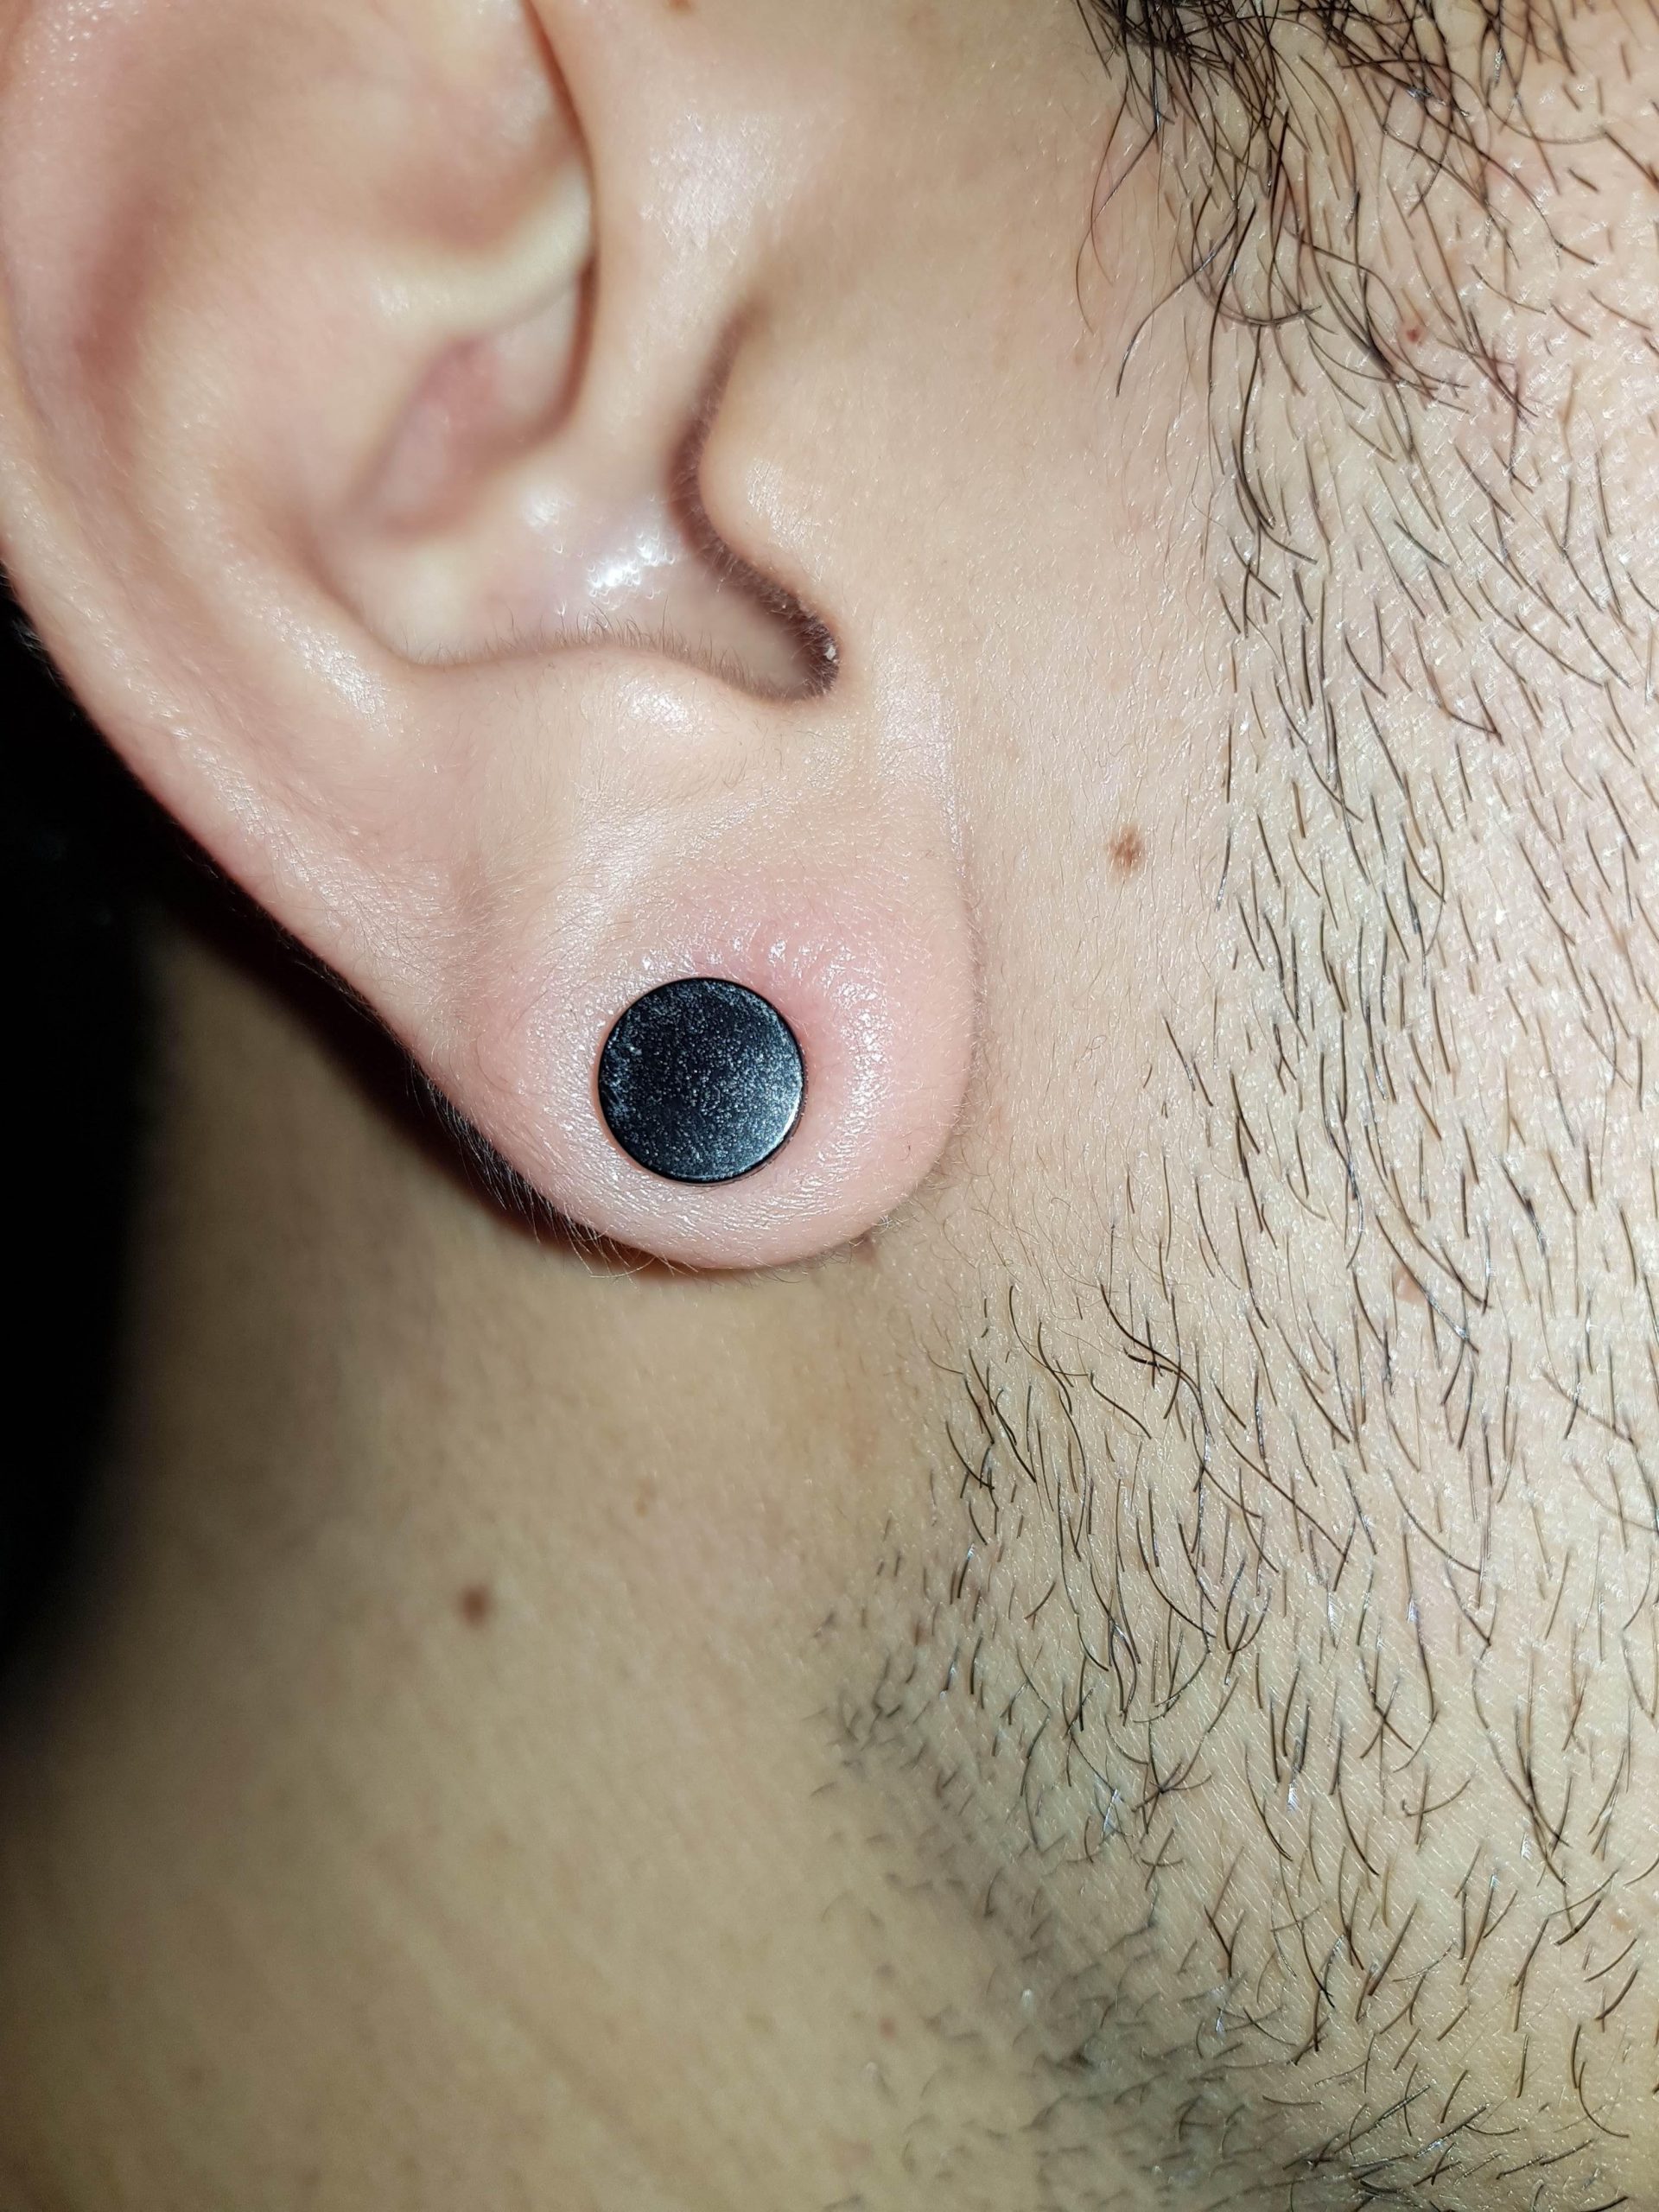 Is my ear lobe infected? : piercing